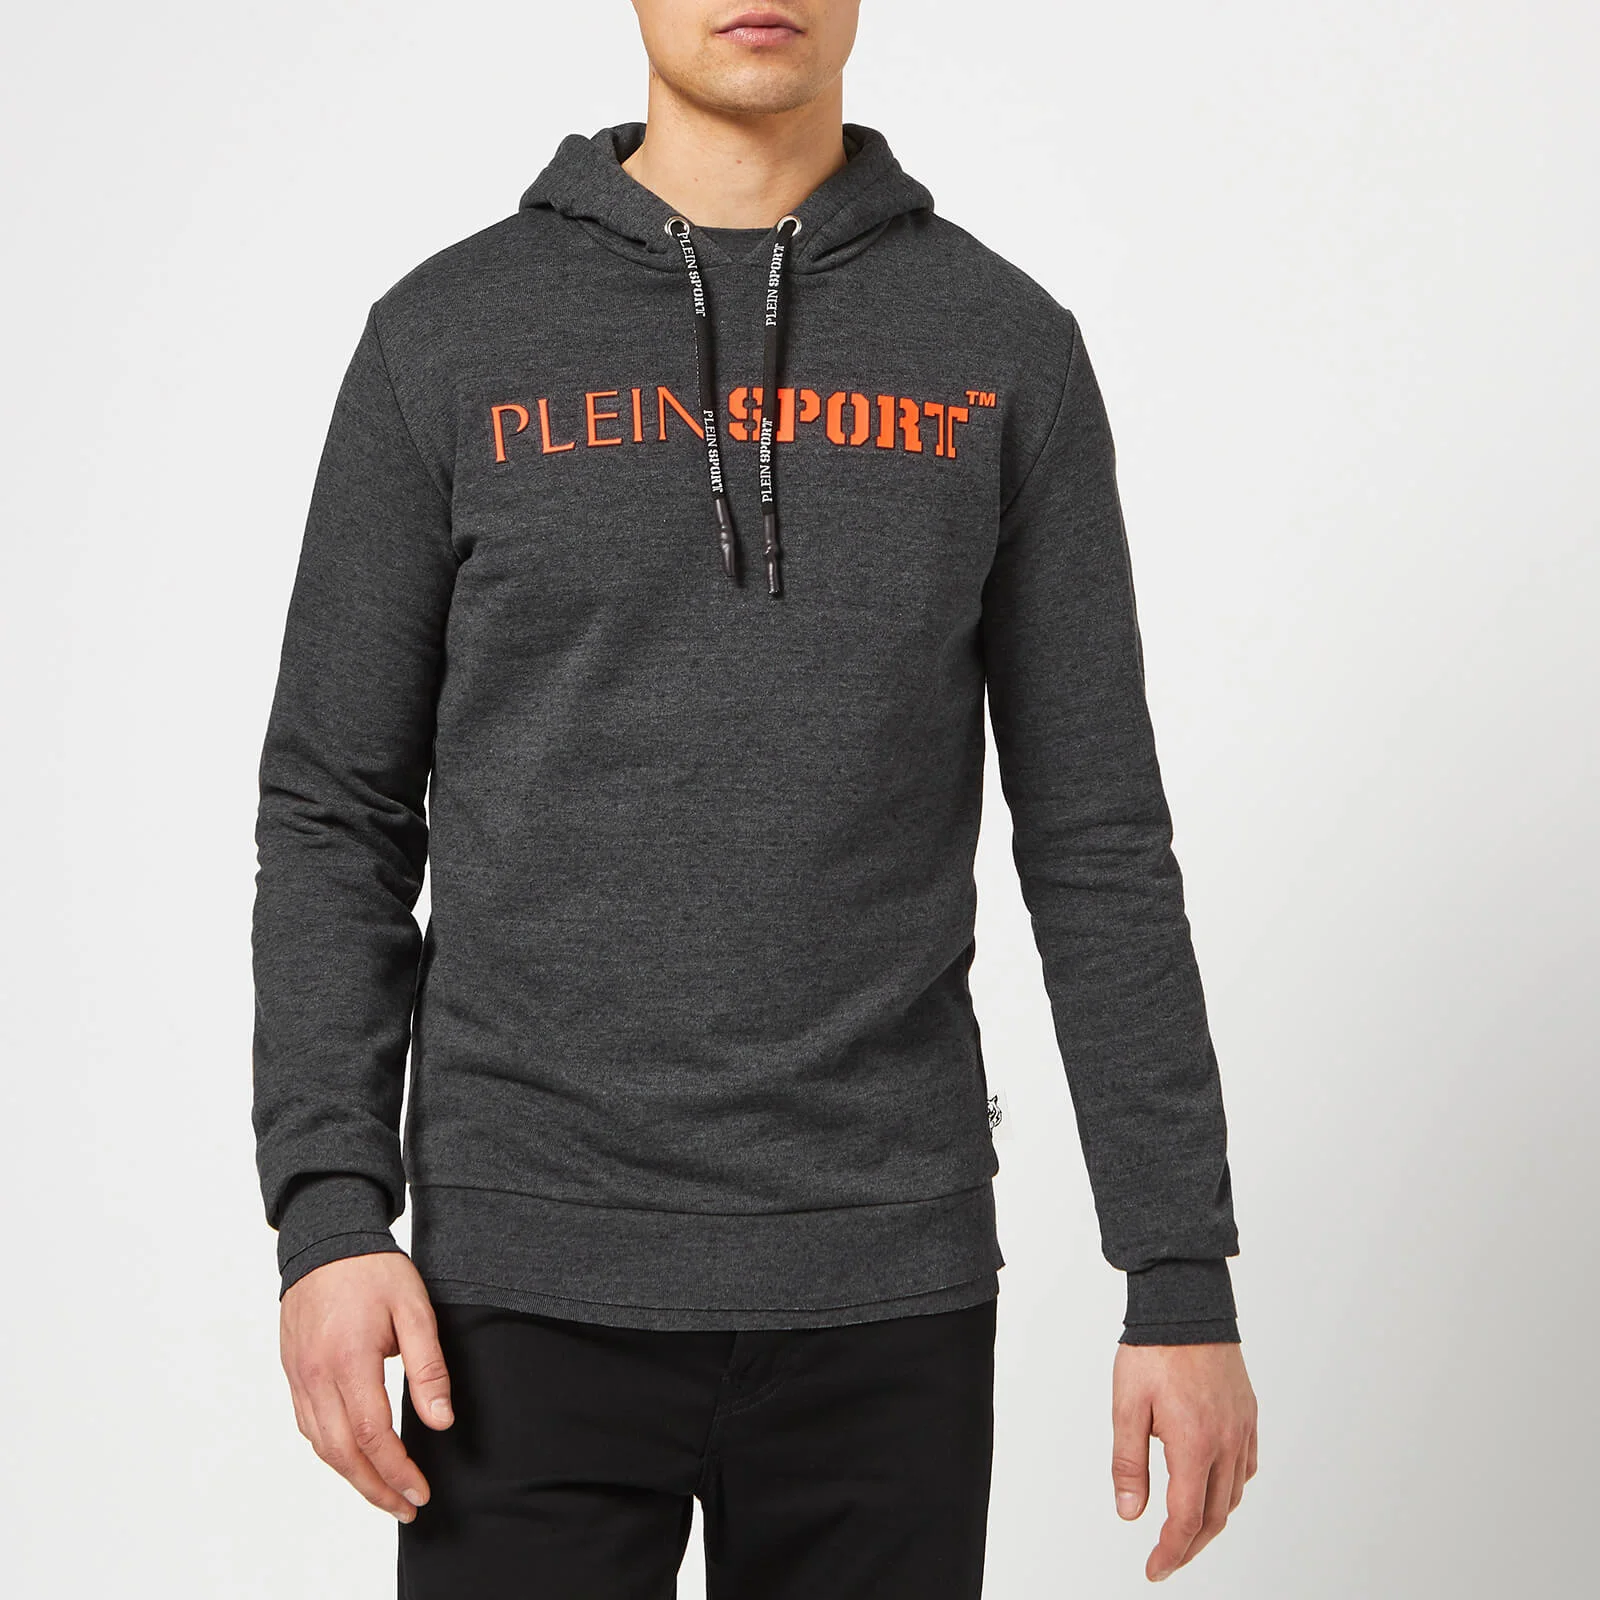 Plein Sport Men's Hoodie Sweatshirt Statement - Dark Grey Image 1